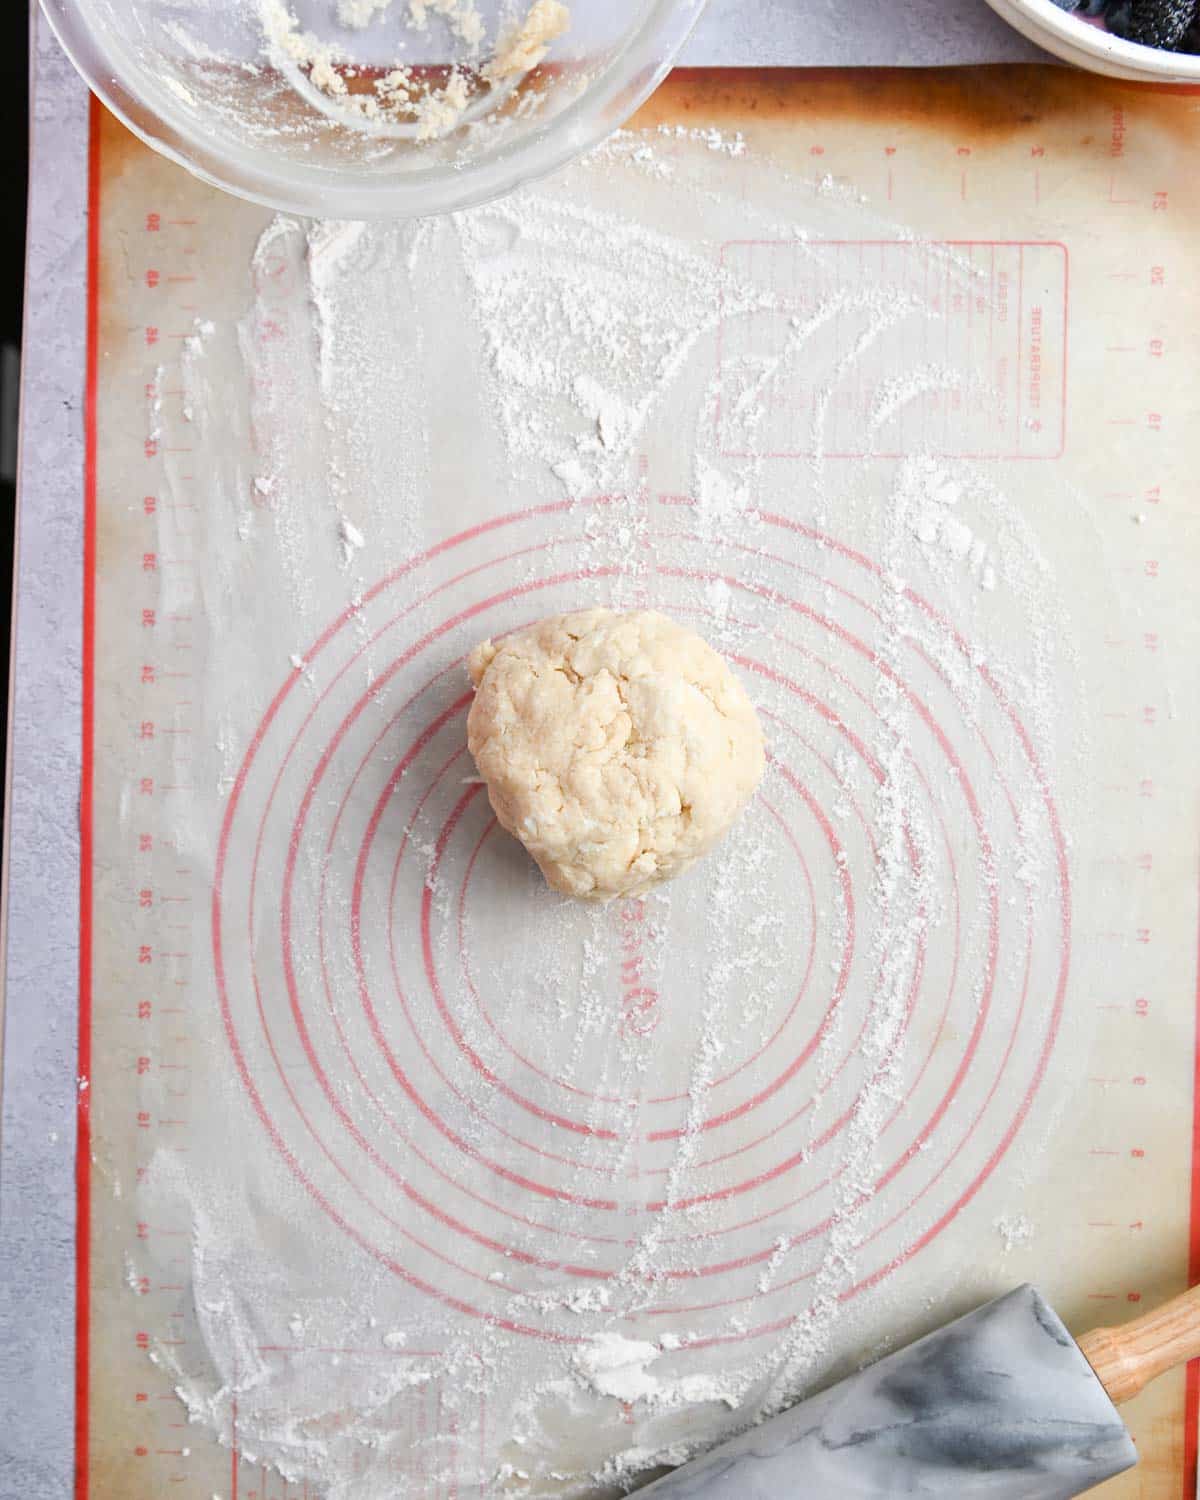 Ball of dough on a silicon baking sheet.